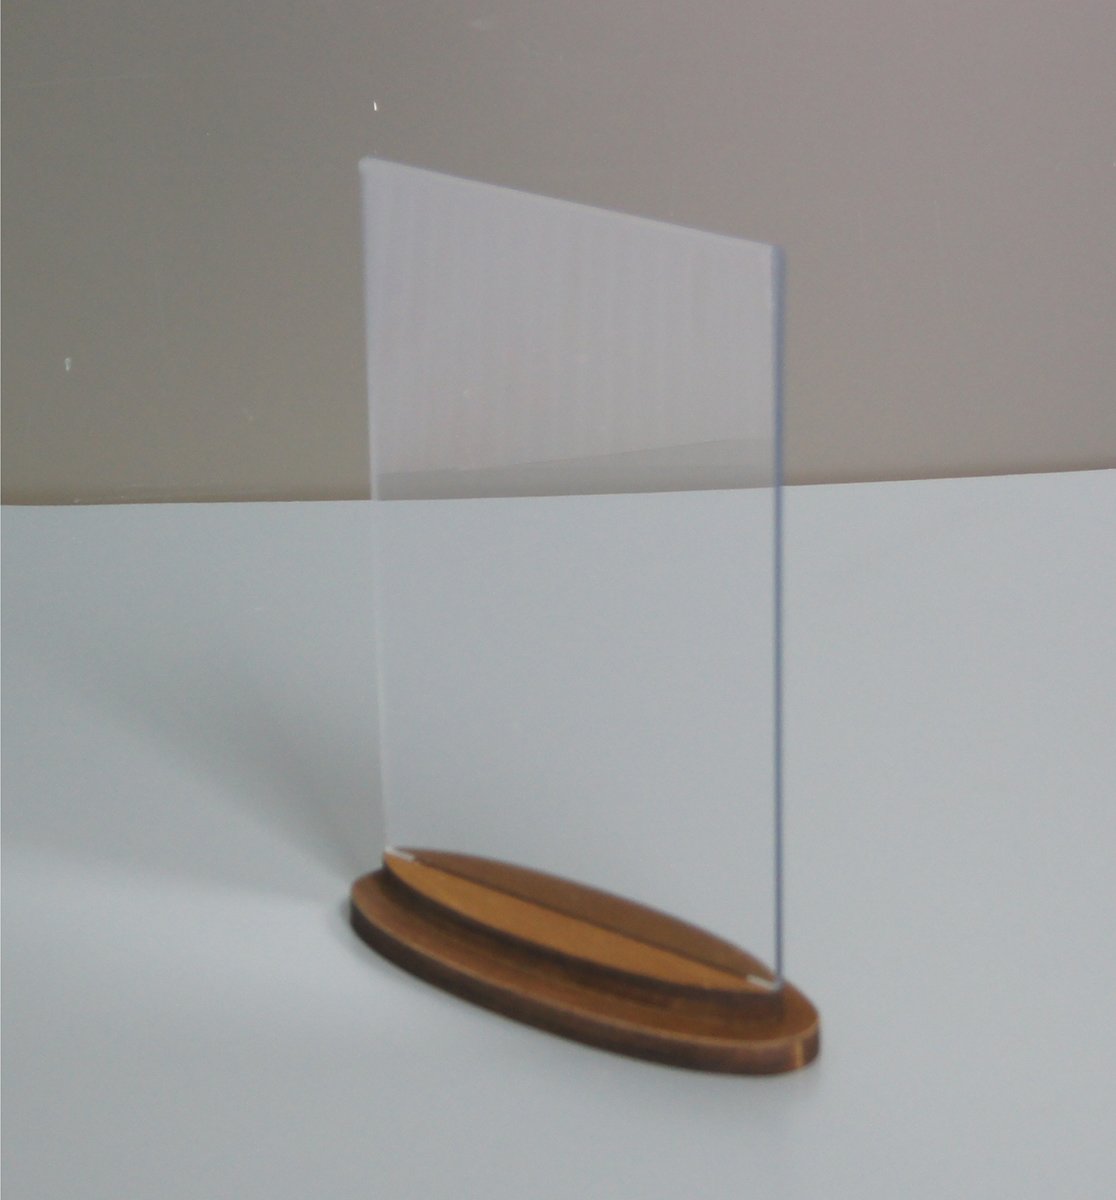 Тейбл тент с деревянным фигурным основанием для формата А5, арт. 14205/o